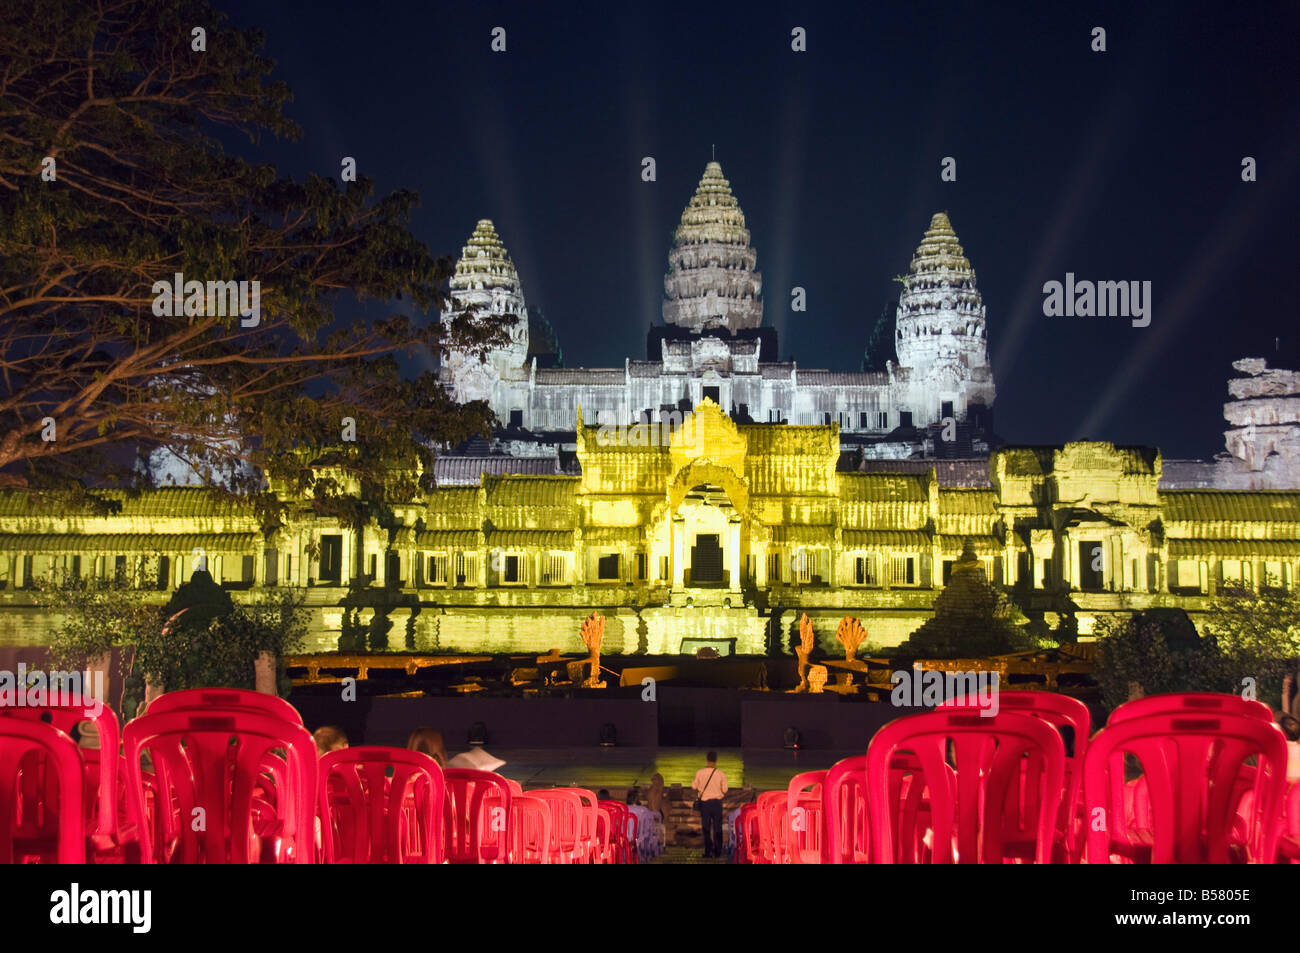 Temple d'Angkor Wat, site classé au patrimoine mondial, la nuit, éclairée d'une lumière spéciale, Siem Reap, Cambodge, Indochine Banque D'Images